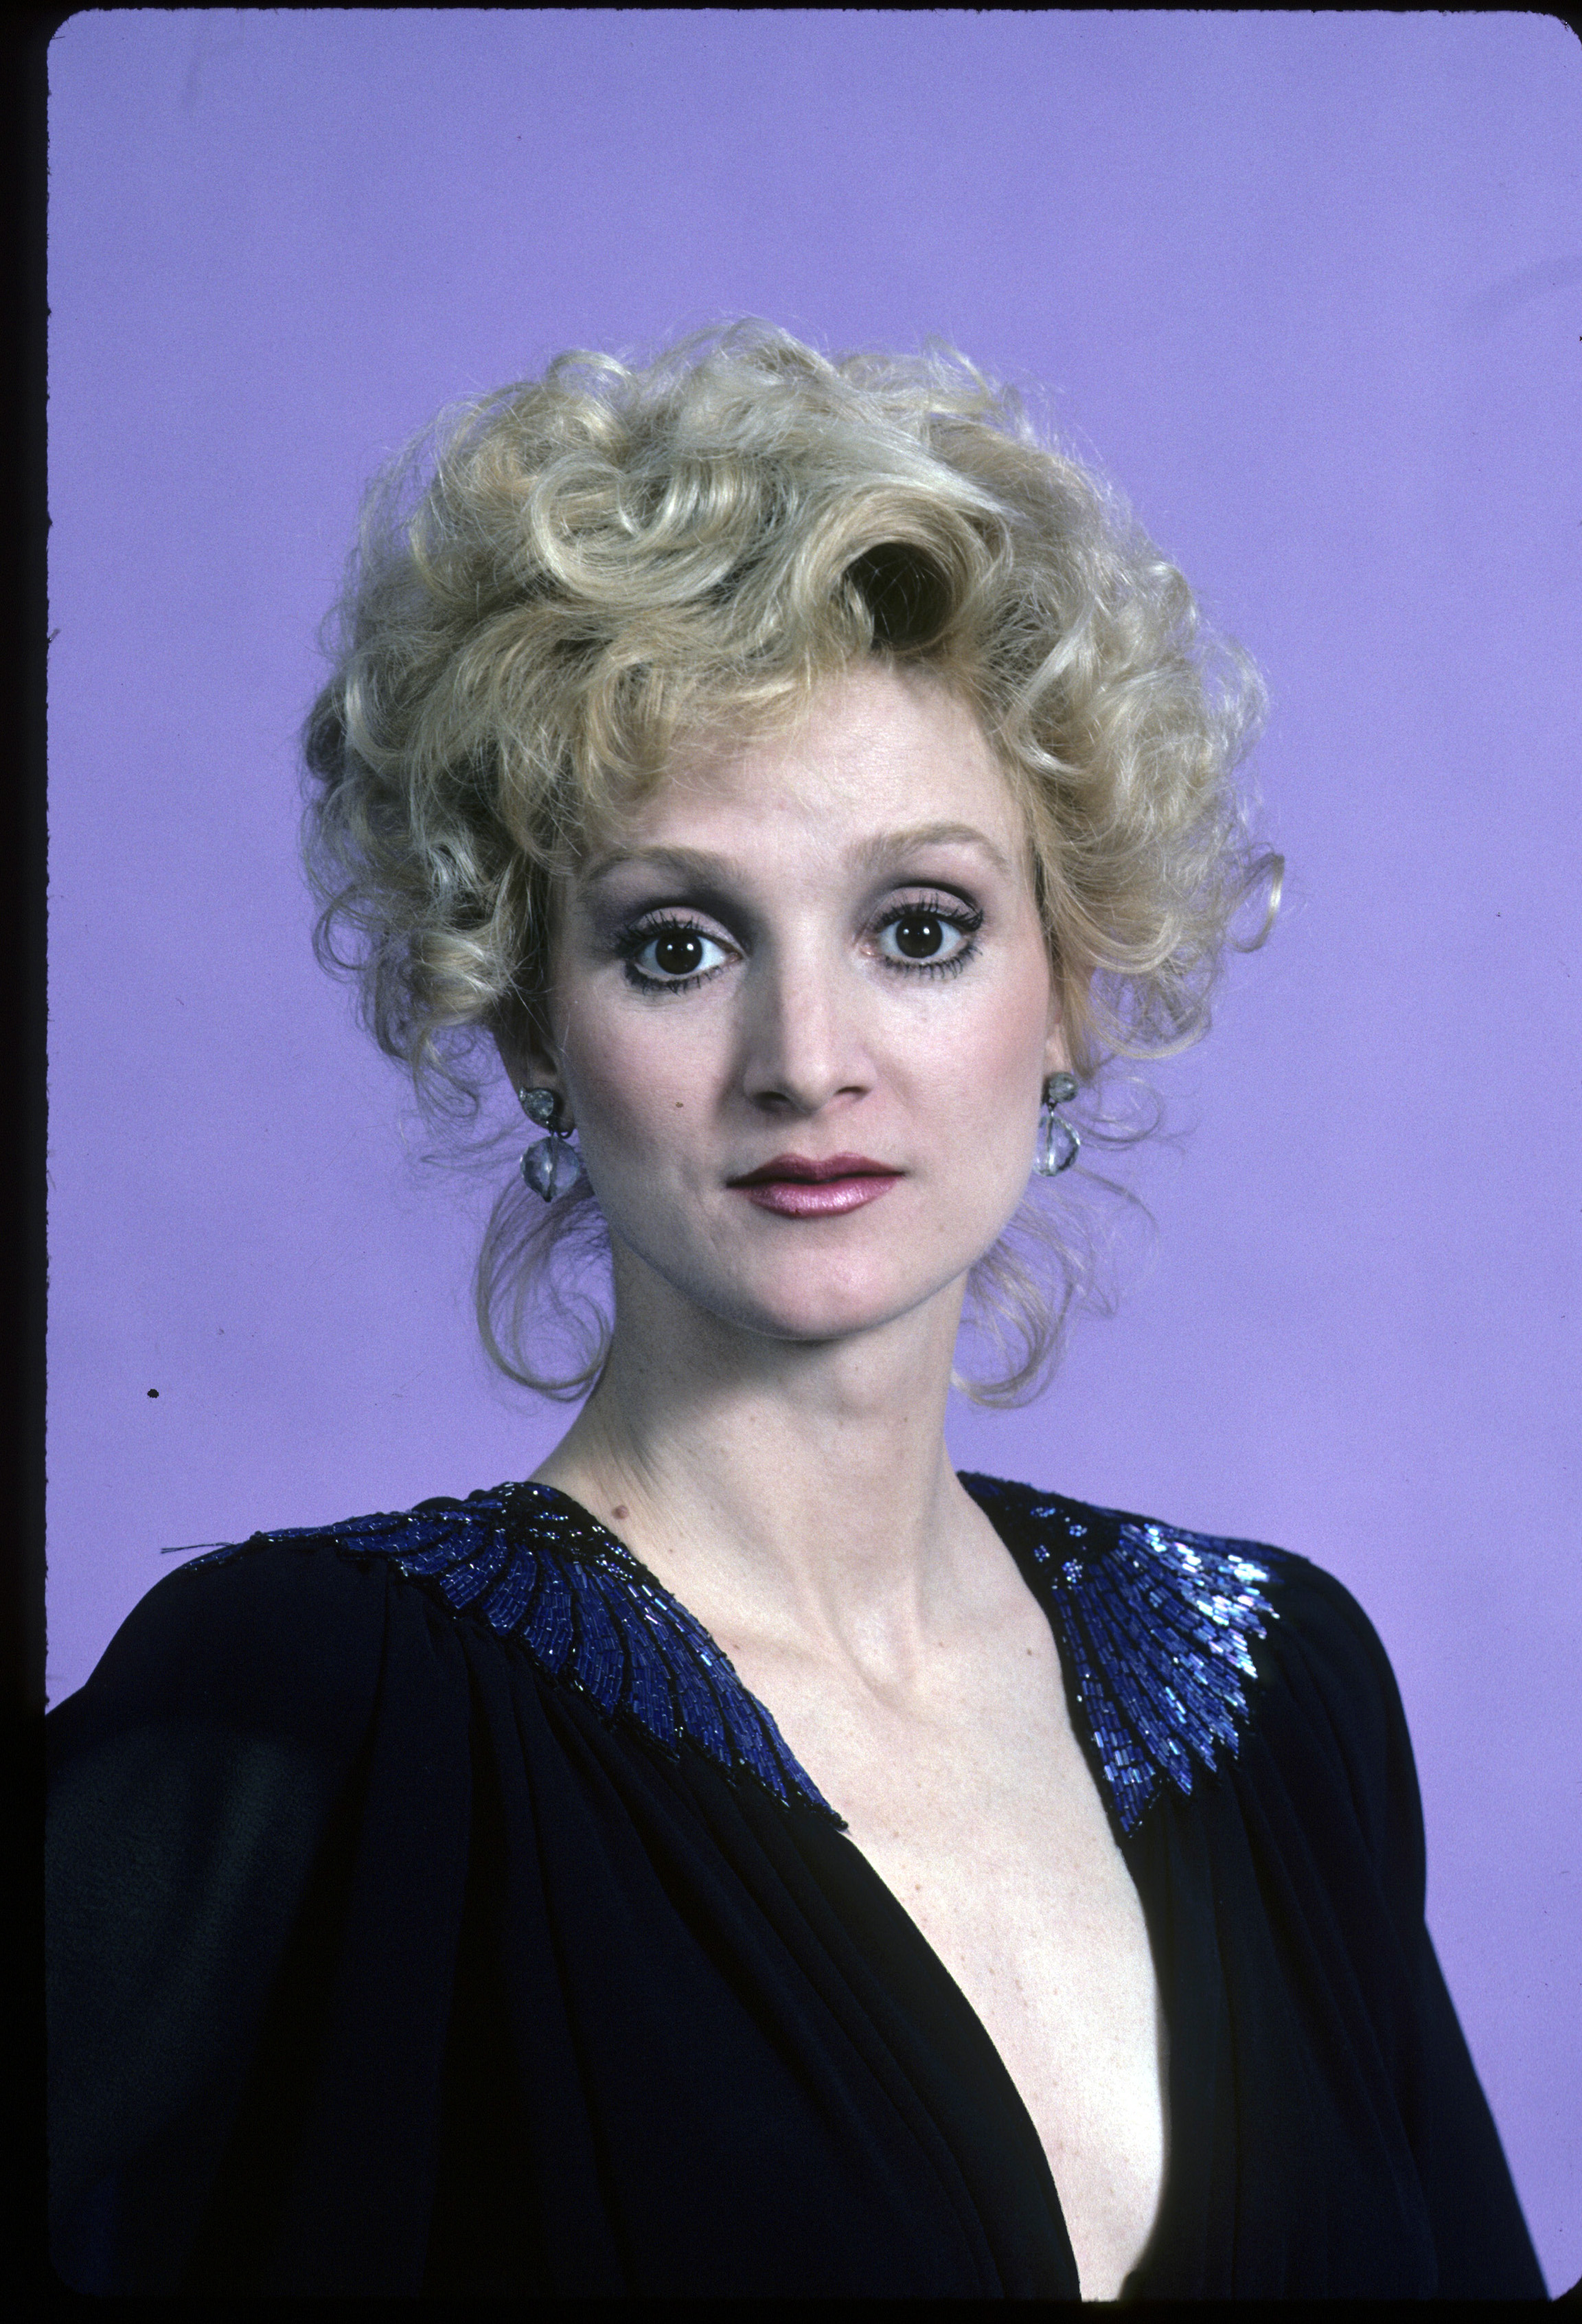 Pamela Blair photographiée en 1985 | Source : Getty Images